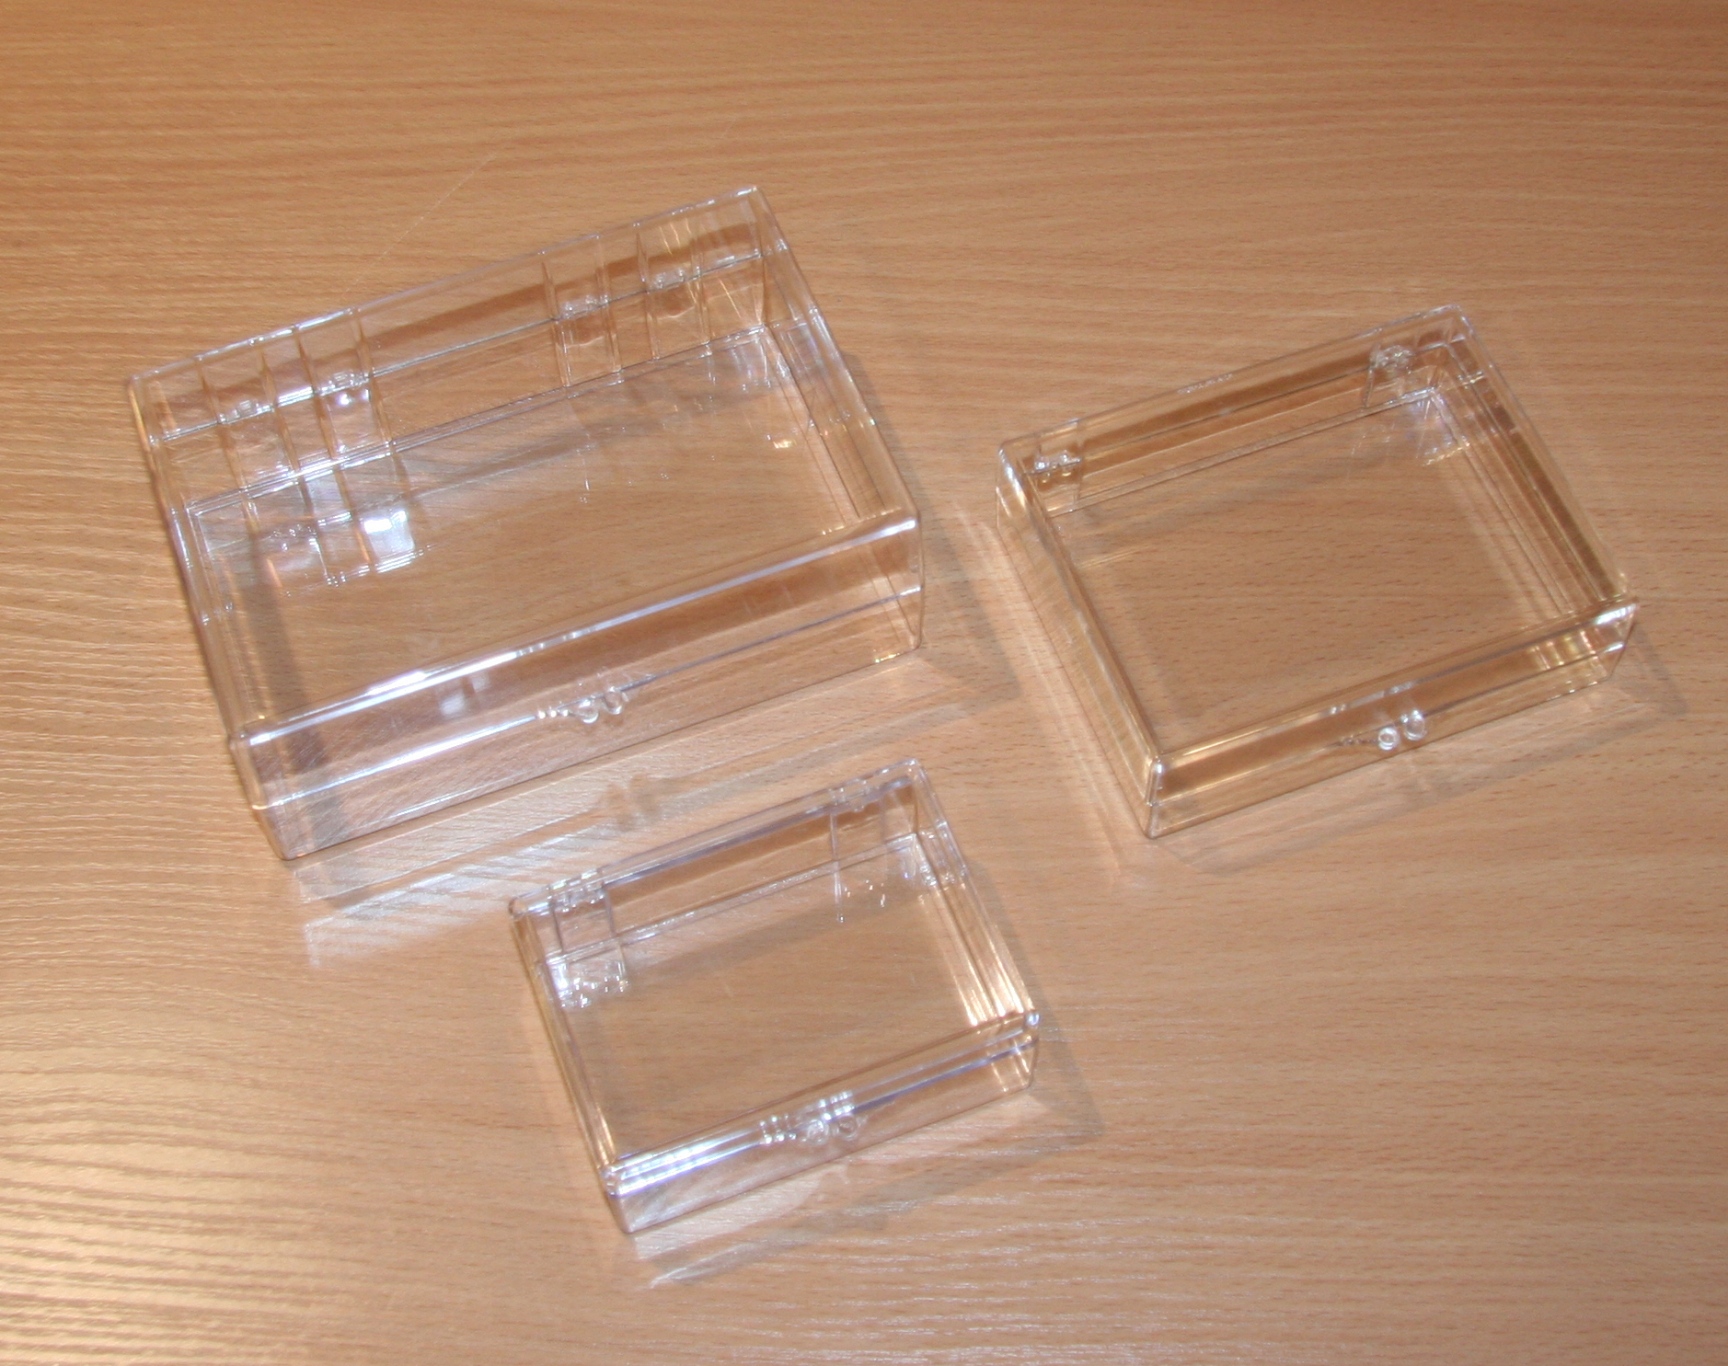 Small Clear Plastic Box - 3 ½” x 2 ½” x 1 ½”